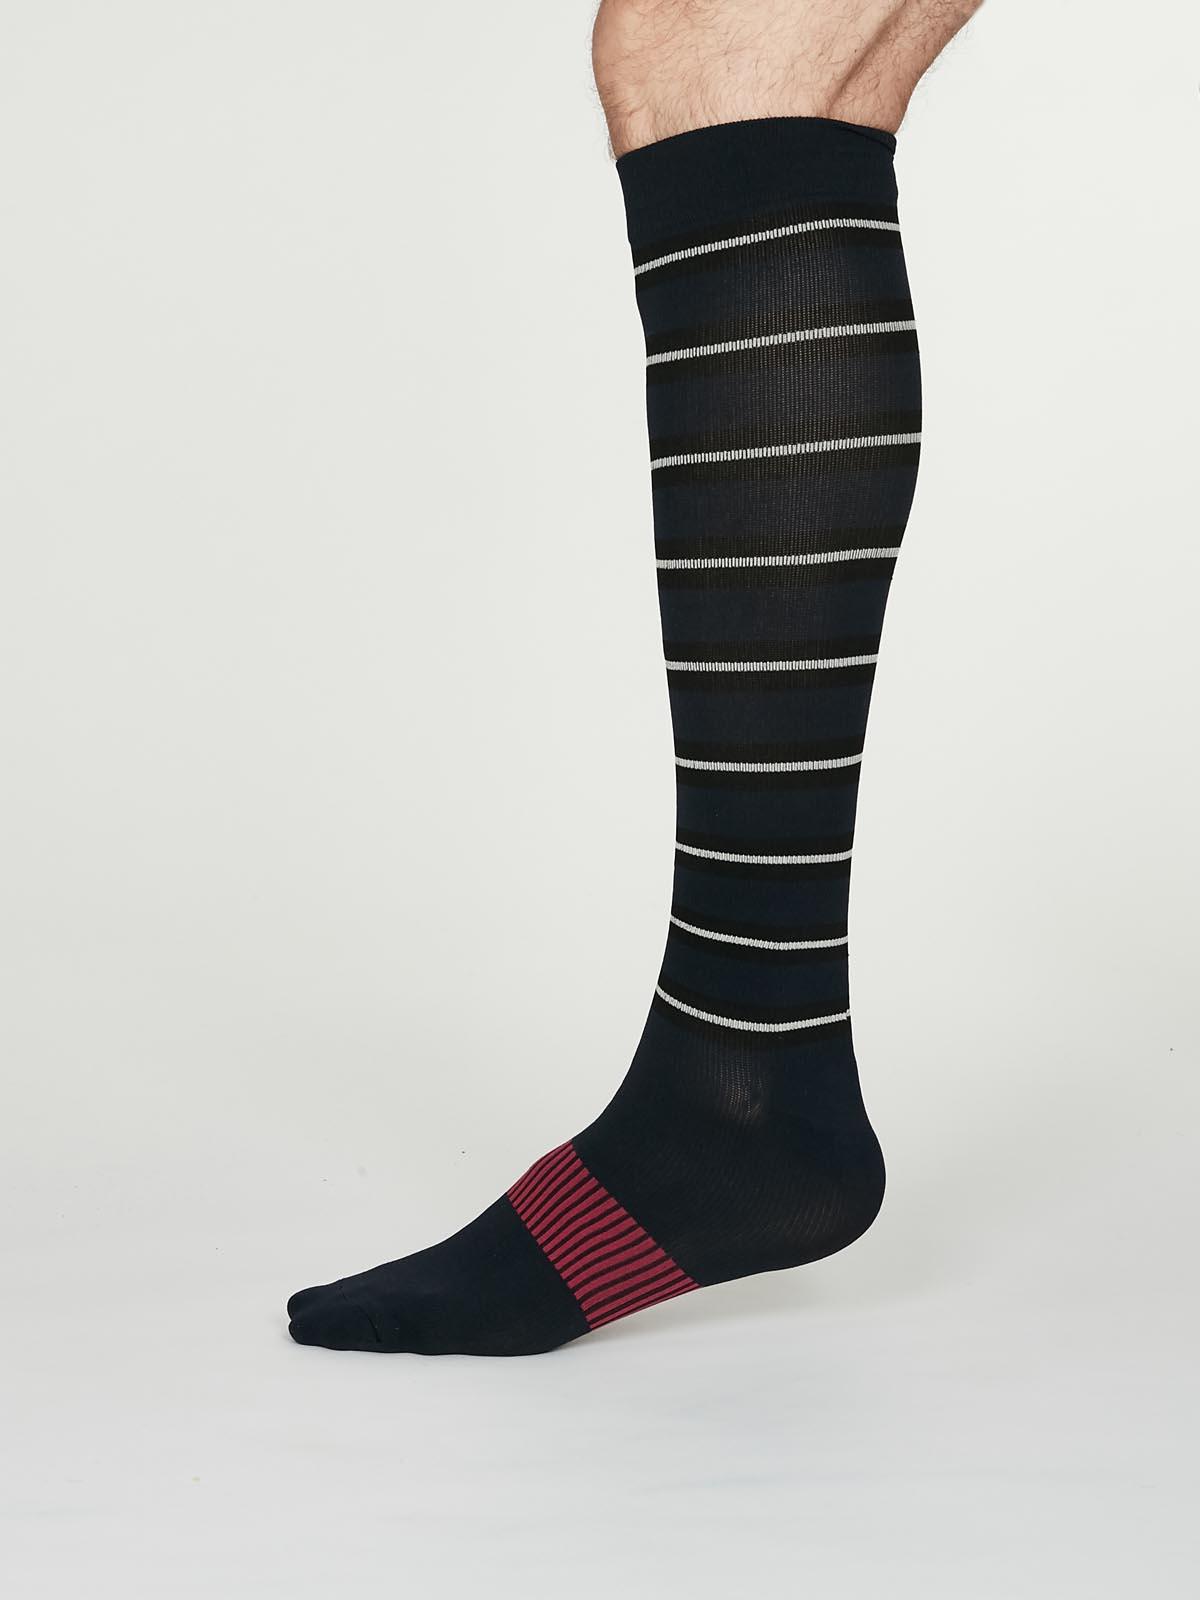 Thomas Compression Socks - Navy Blue - Thought Clothing UK